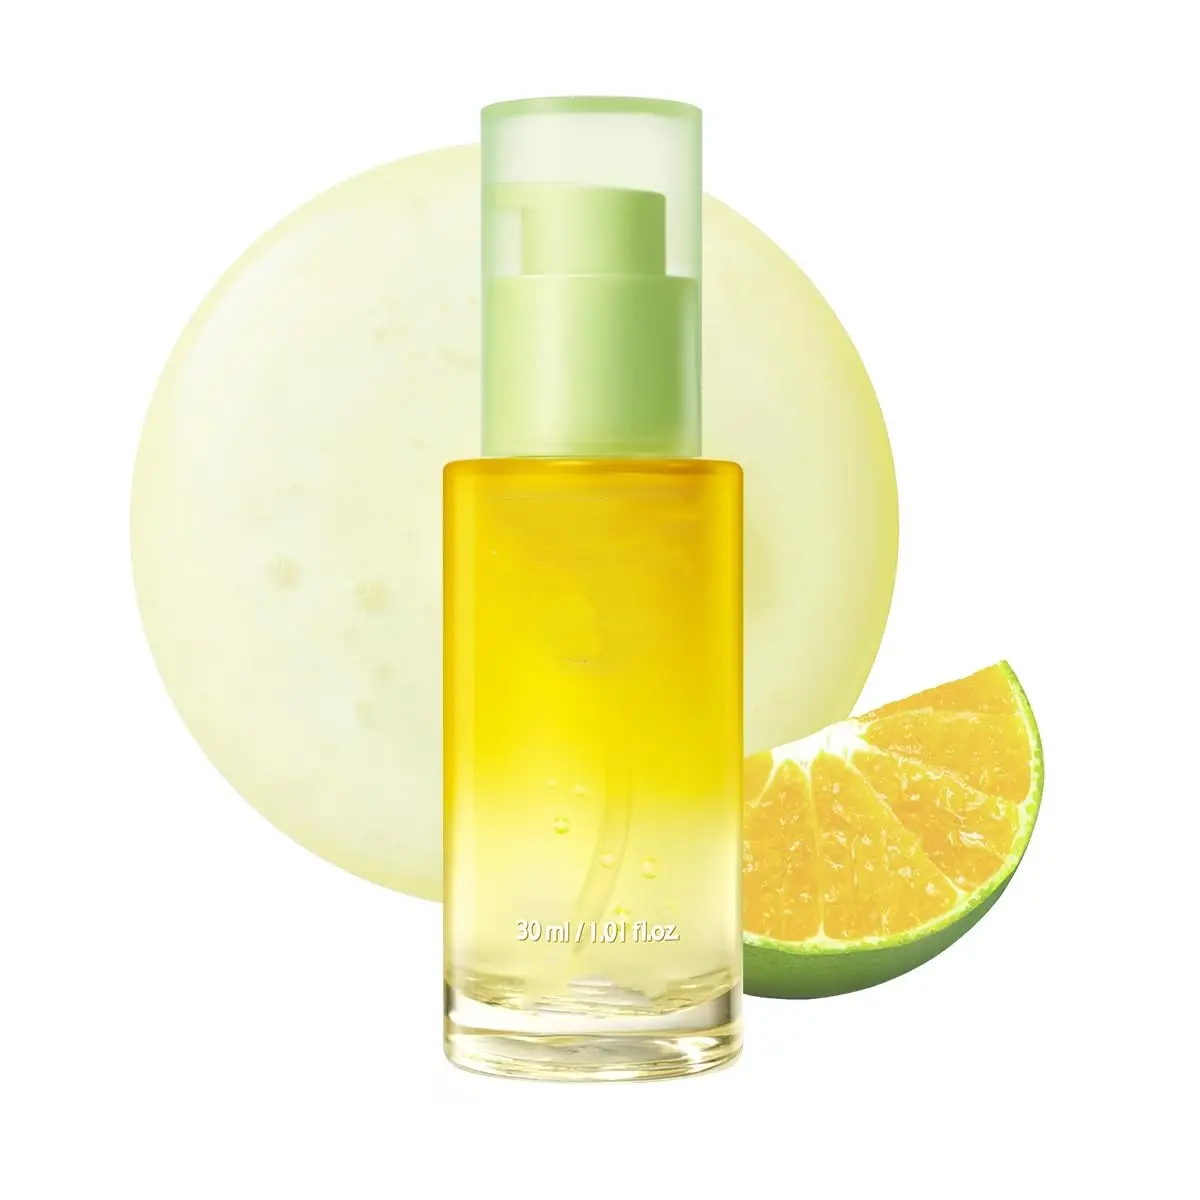 Buongiorno mandarino verde vitamina C idratante antirughe e siero sbiancante miglior siero vegano per il viso per la pelle grassa